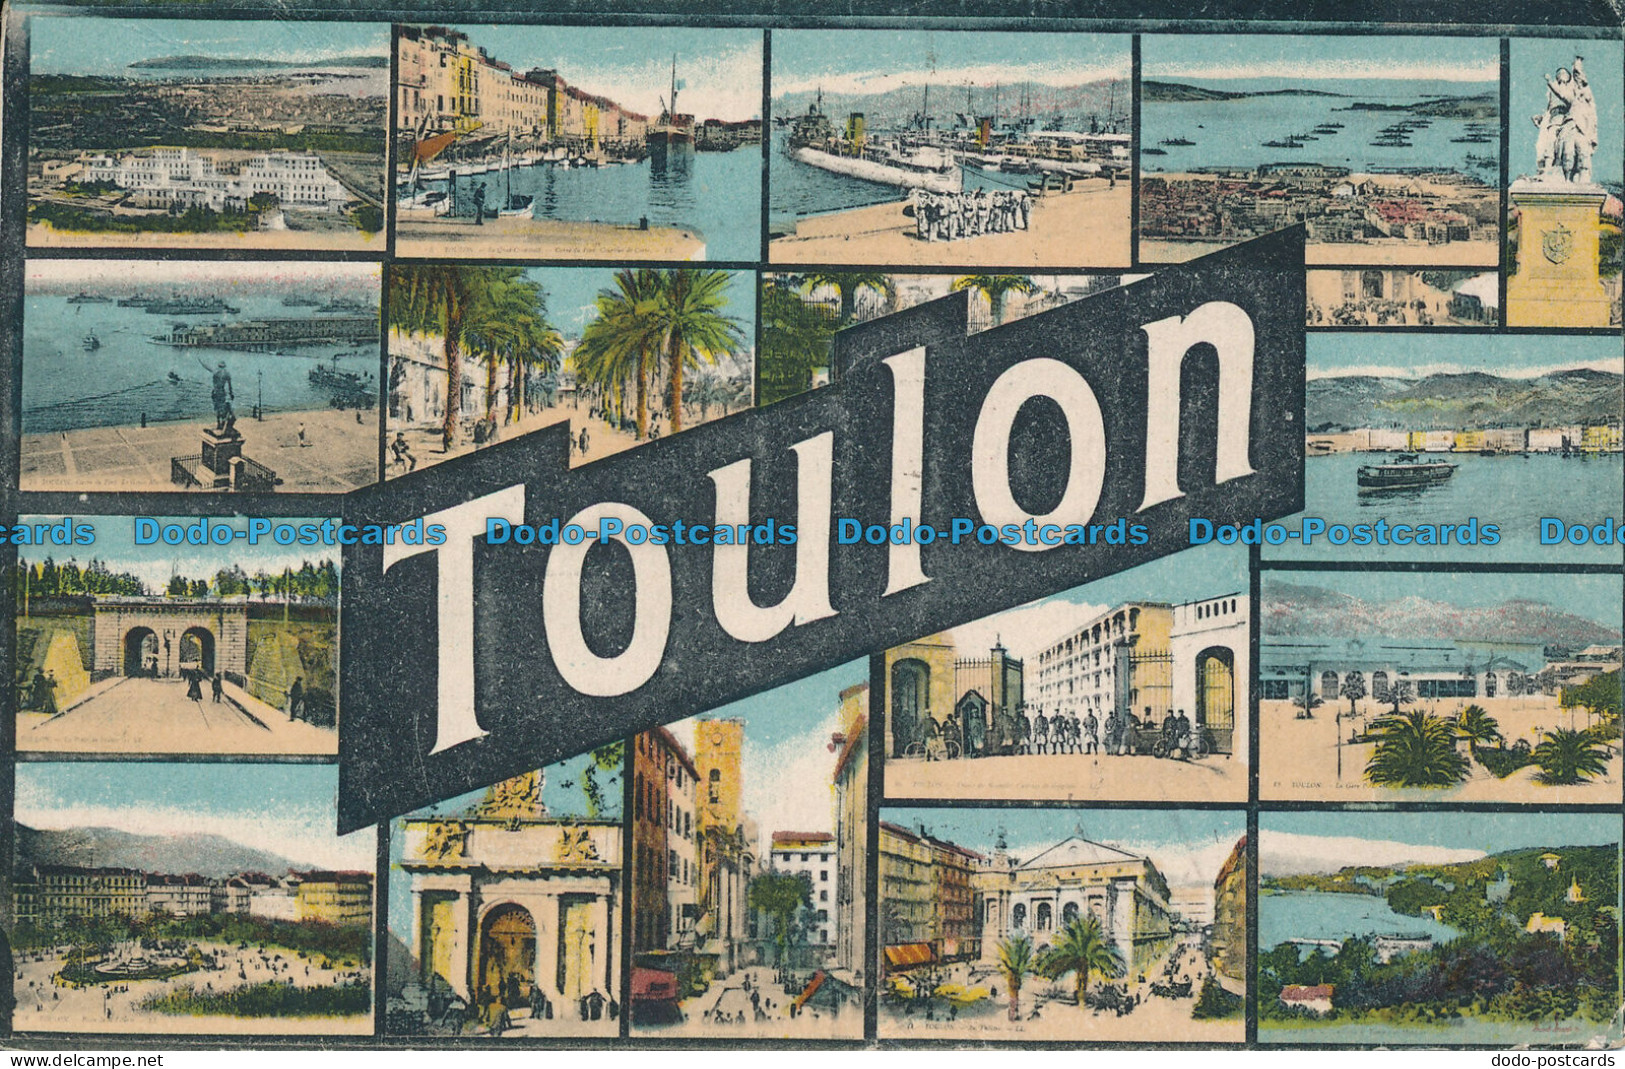 R047428 Toulon. Multi View. Levy Fils - Monde